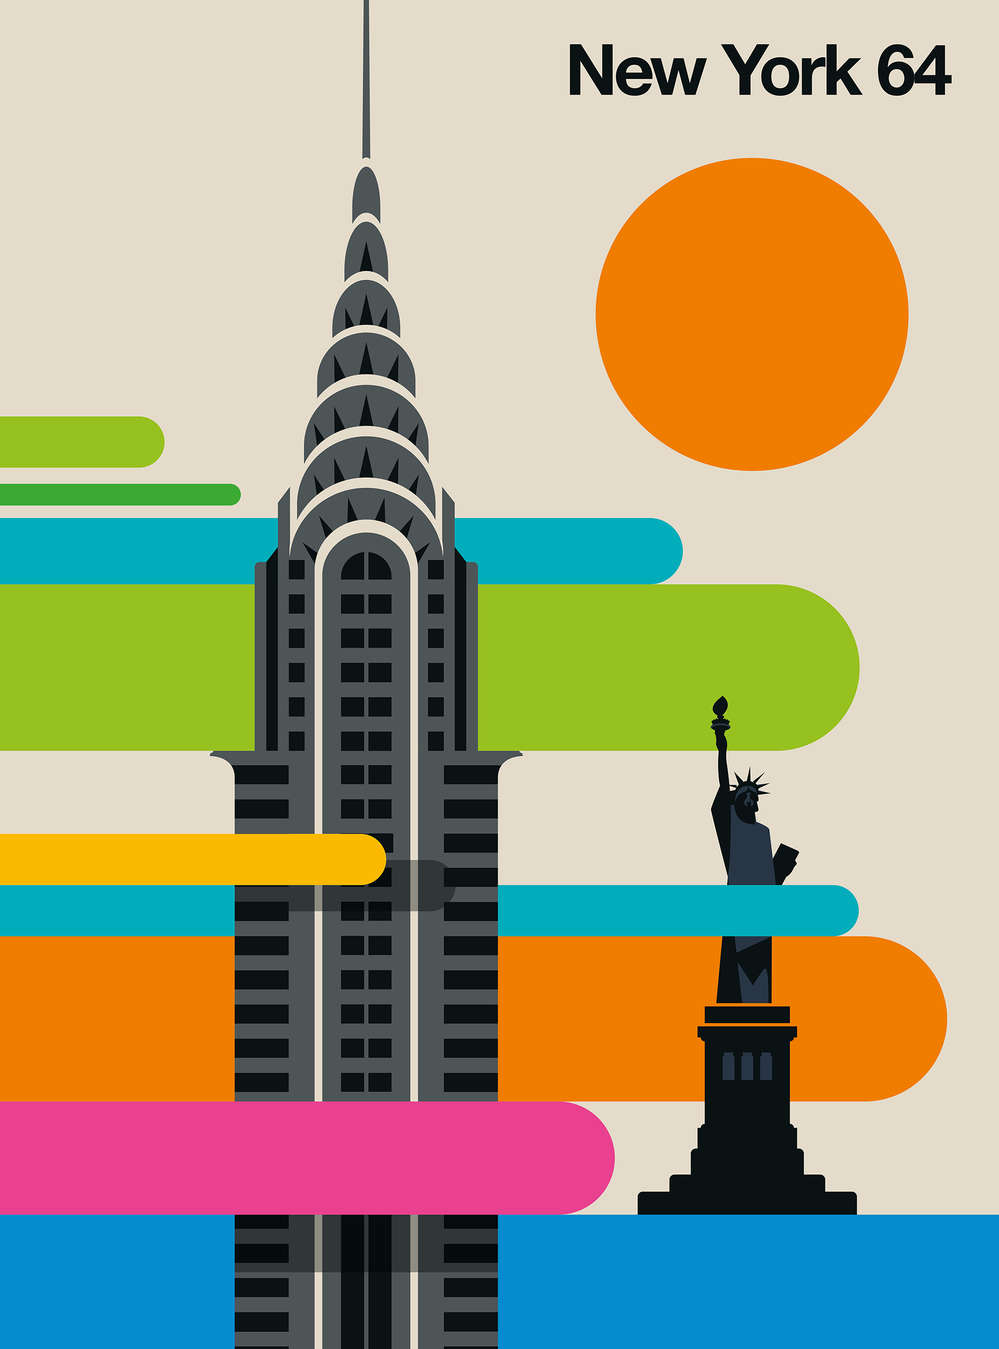             Papier peint panoramique New York au design rétro coloré des années 60
        